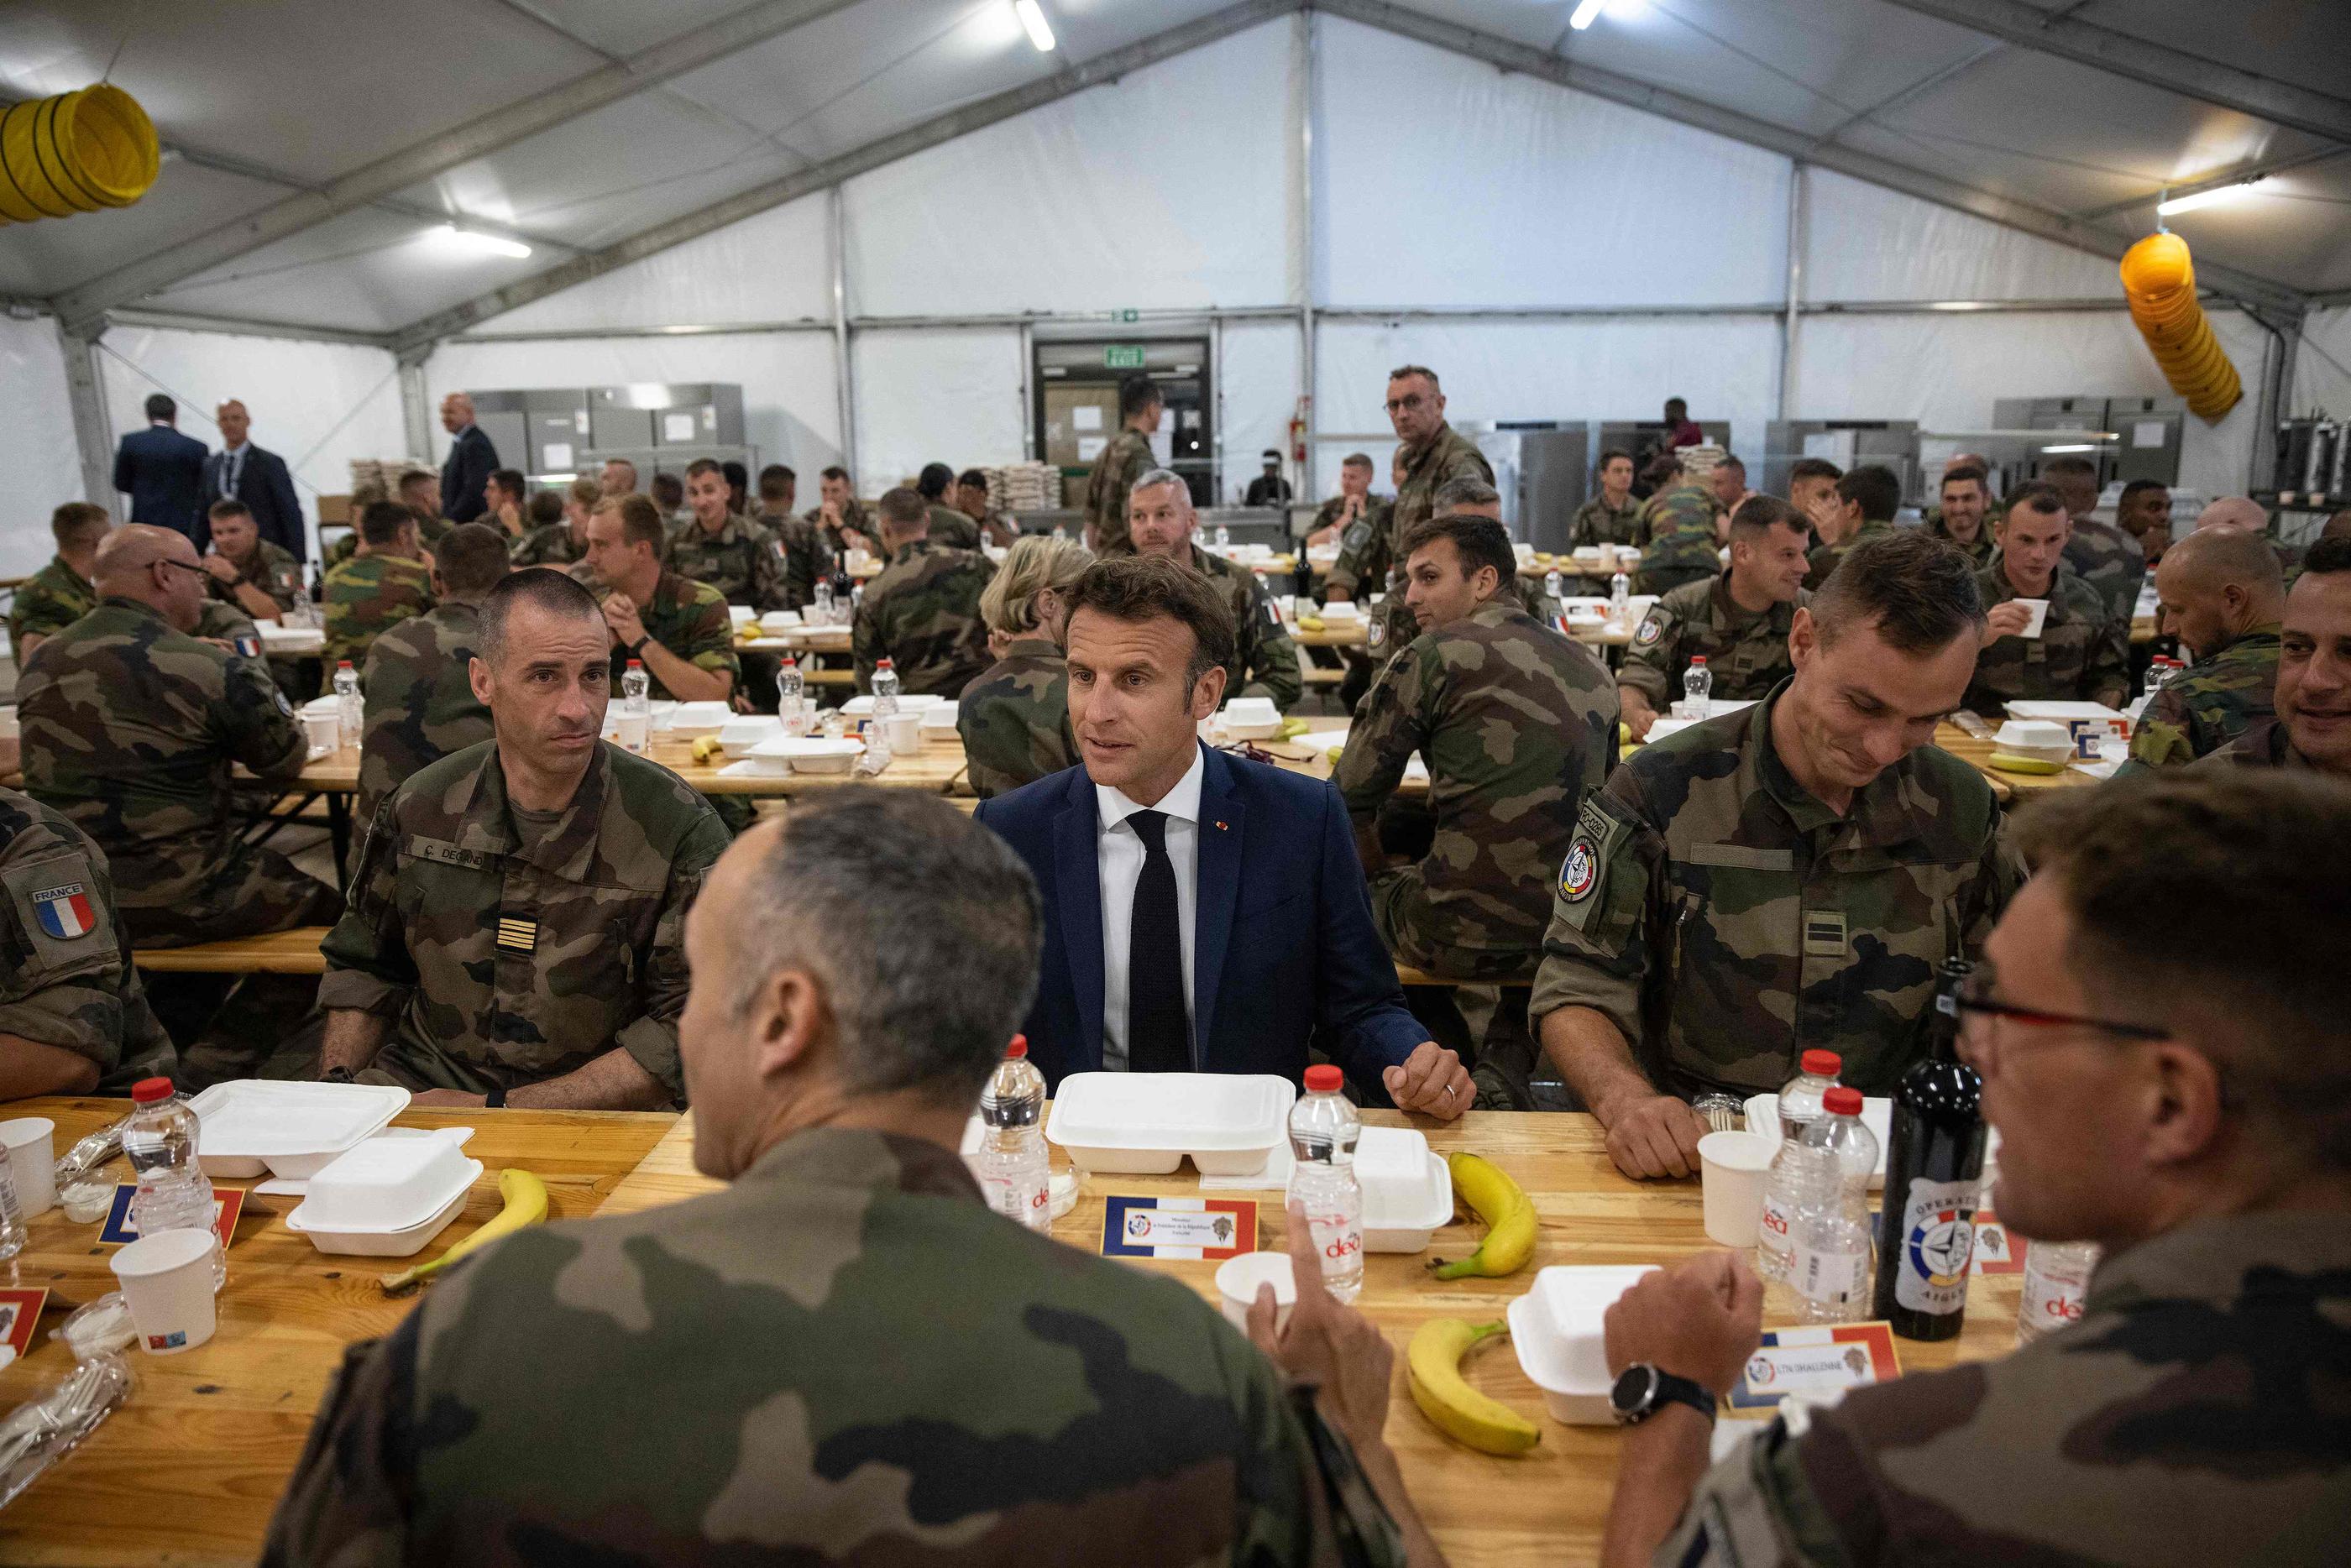 Ce mardi soir, à Constanta (Roumanie), le président Emmanuel Macron a dîné avec des soldats français et belges engagés dans la mission Aigle. AFP/Pool/Yohan Valat